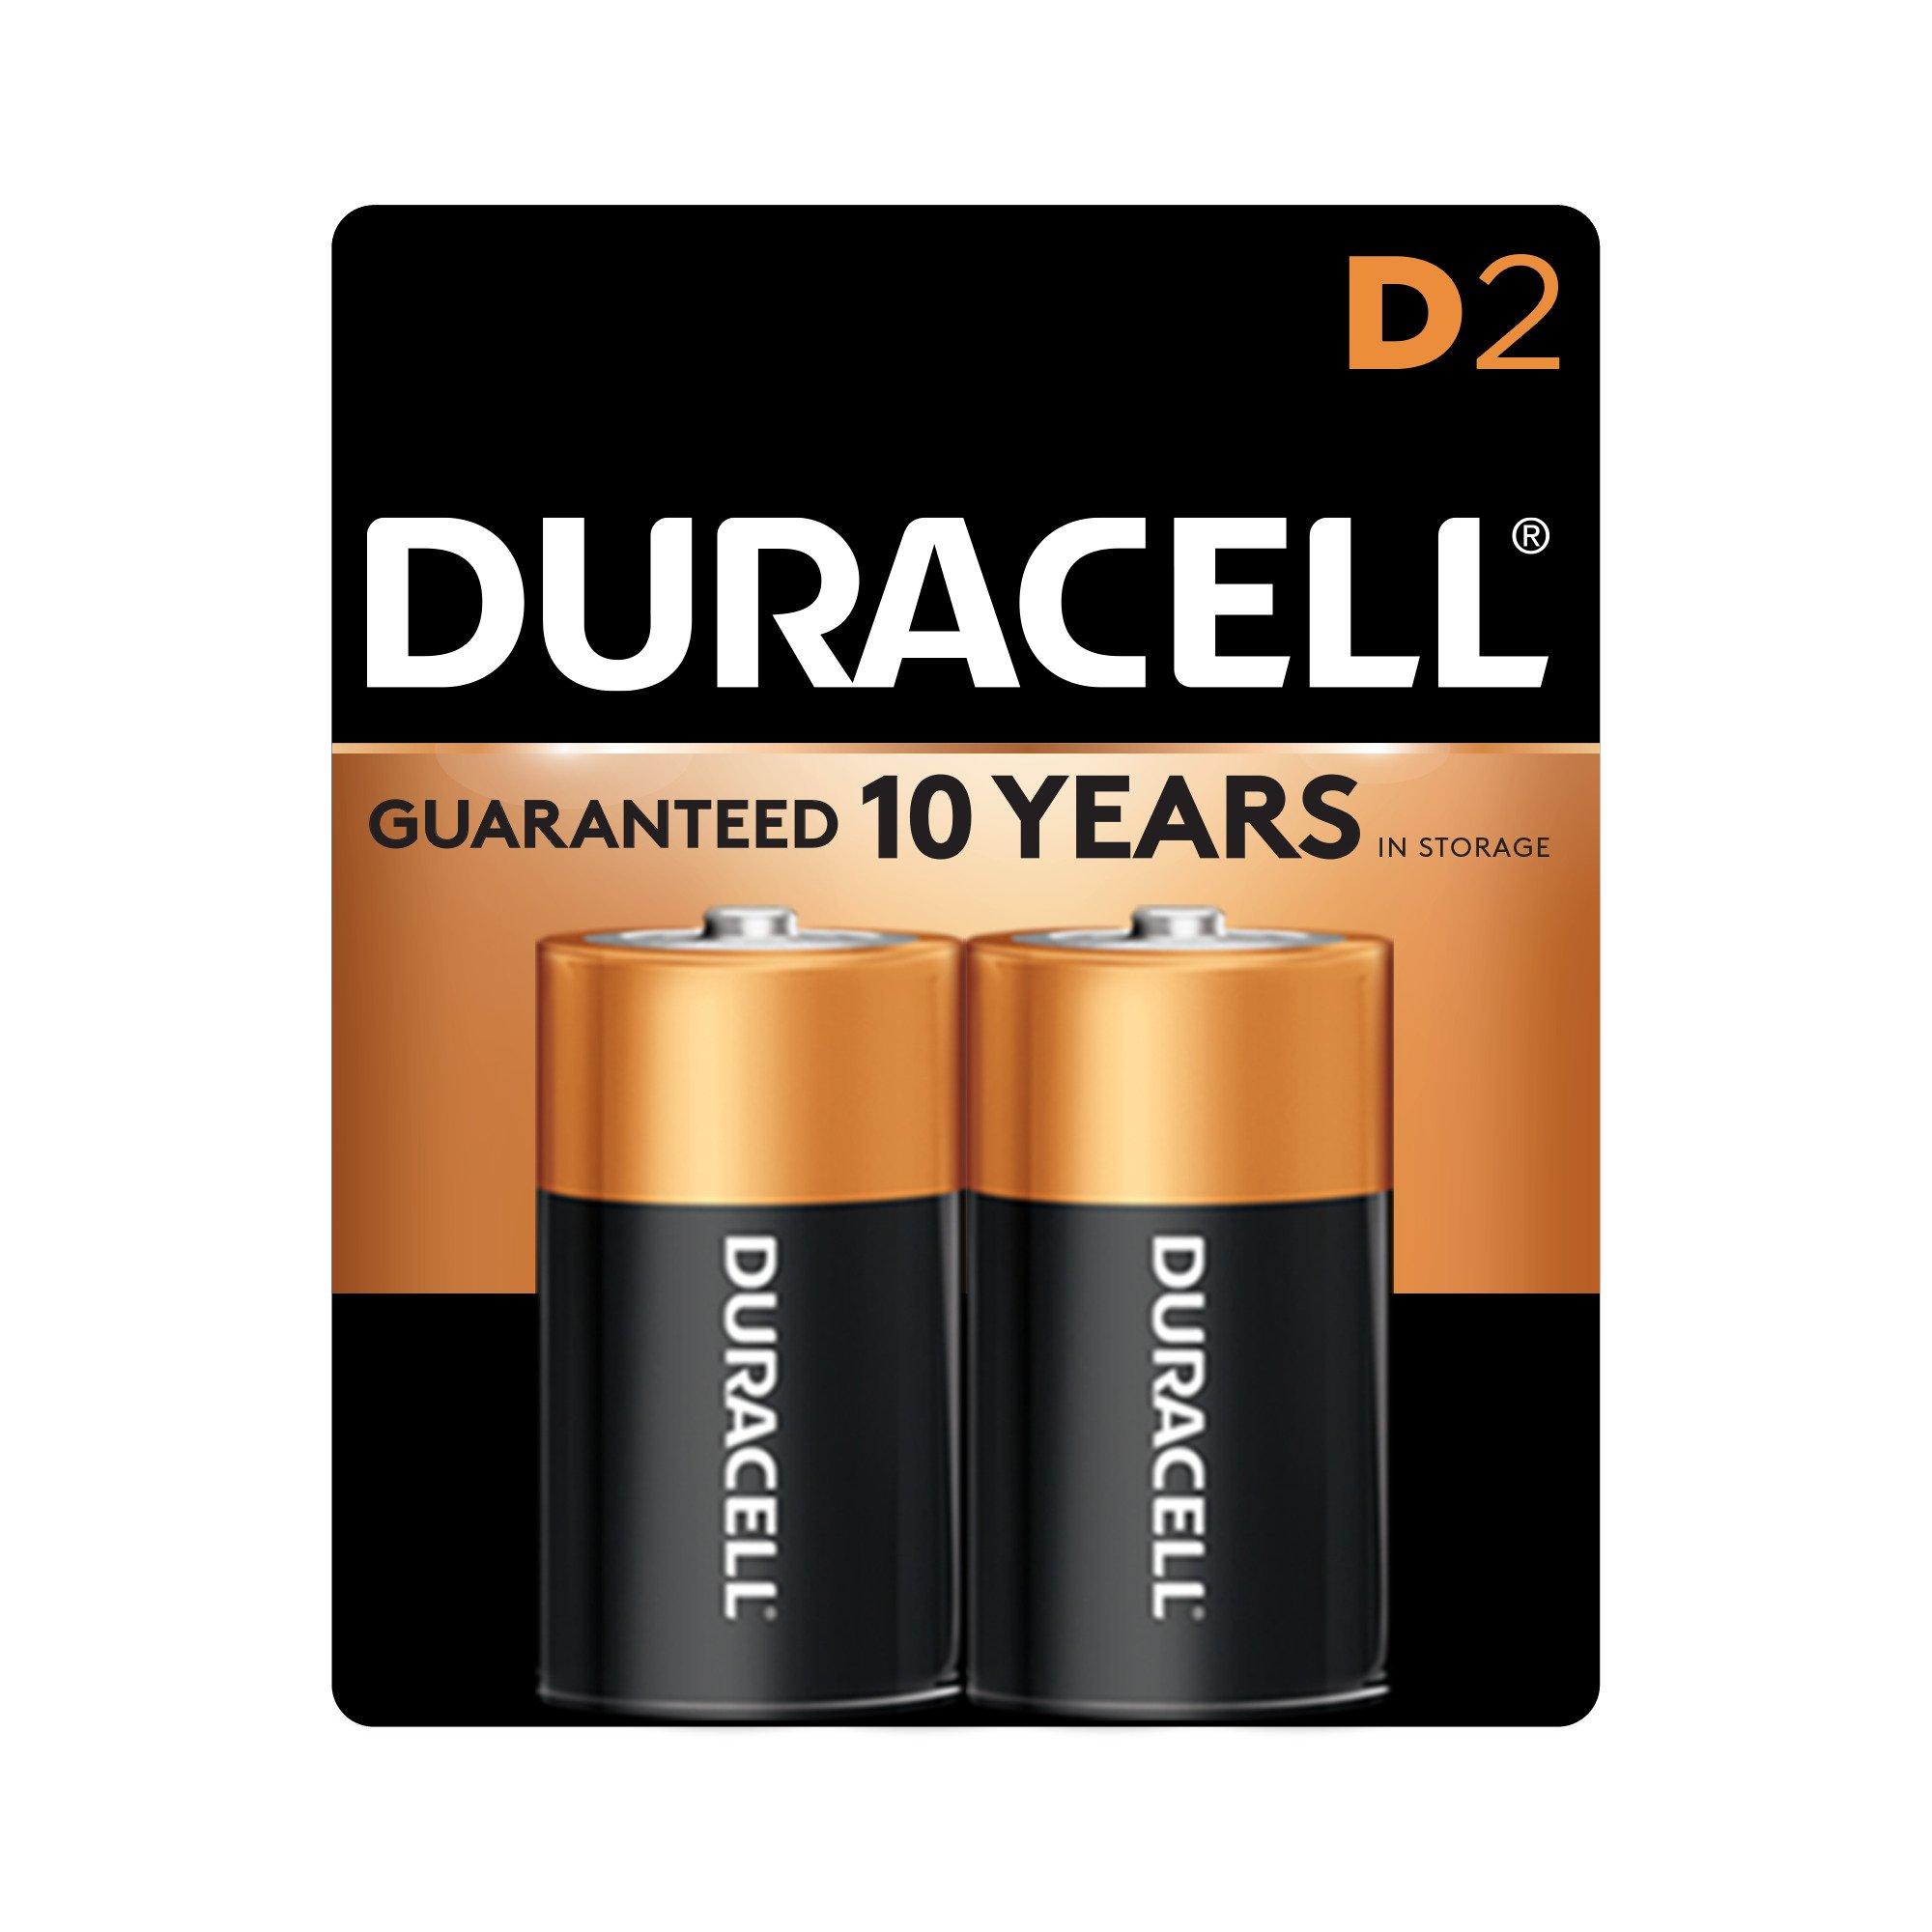 jeg er glad sagtmodighed krone Duracell Coppertop D Batteries 2 Pack | GameStop